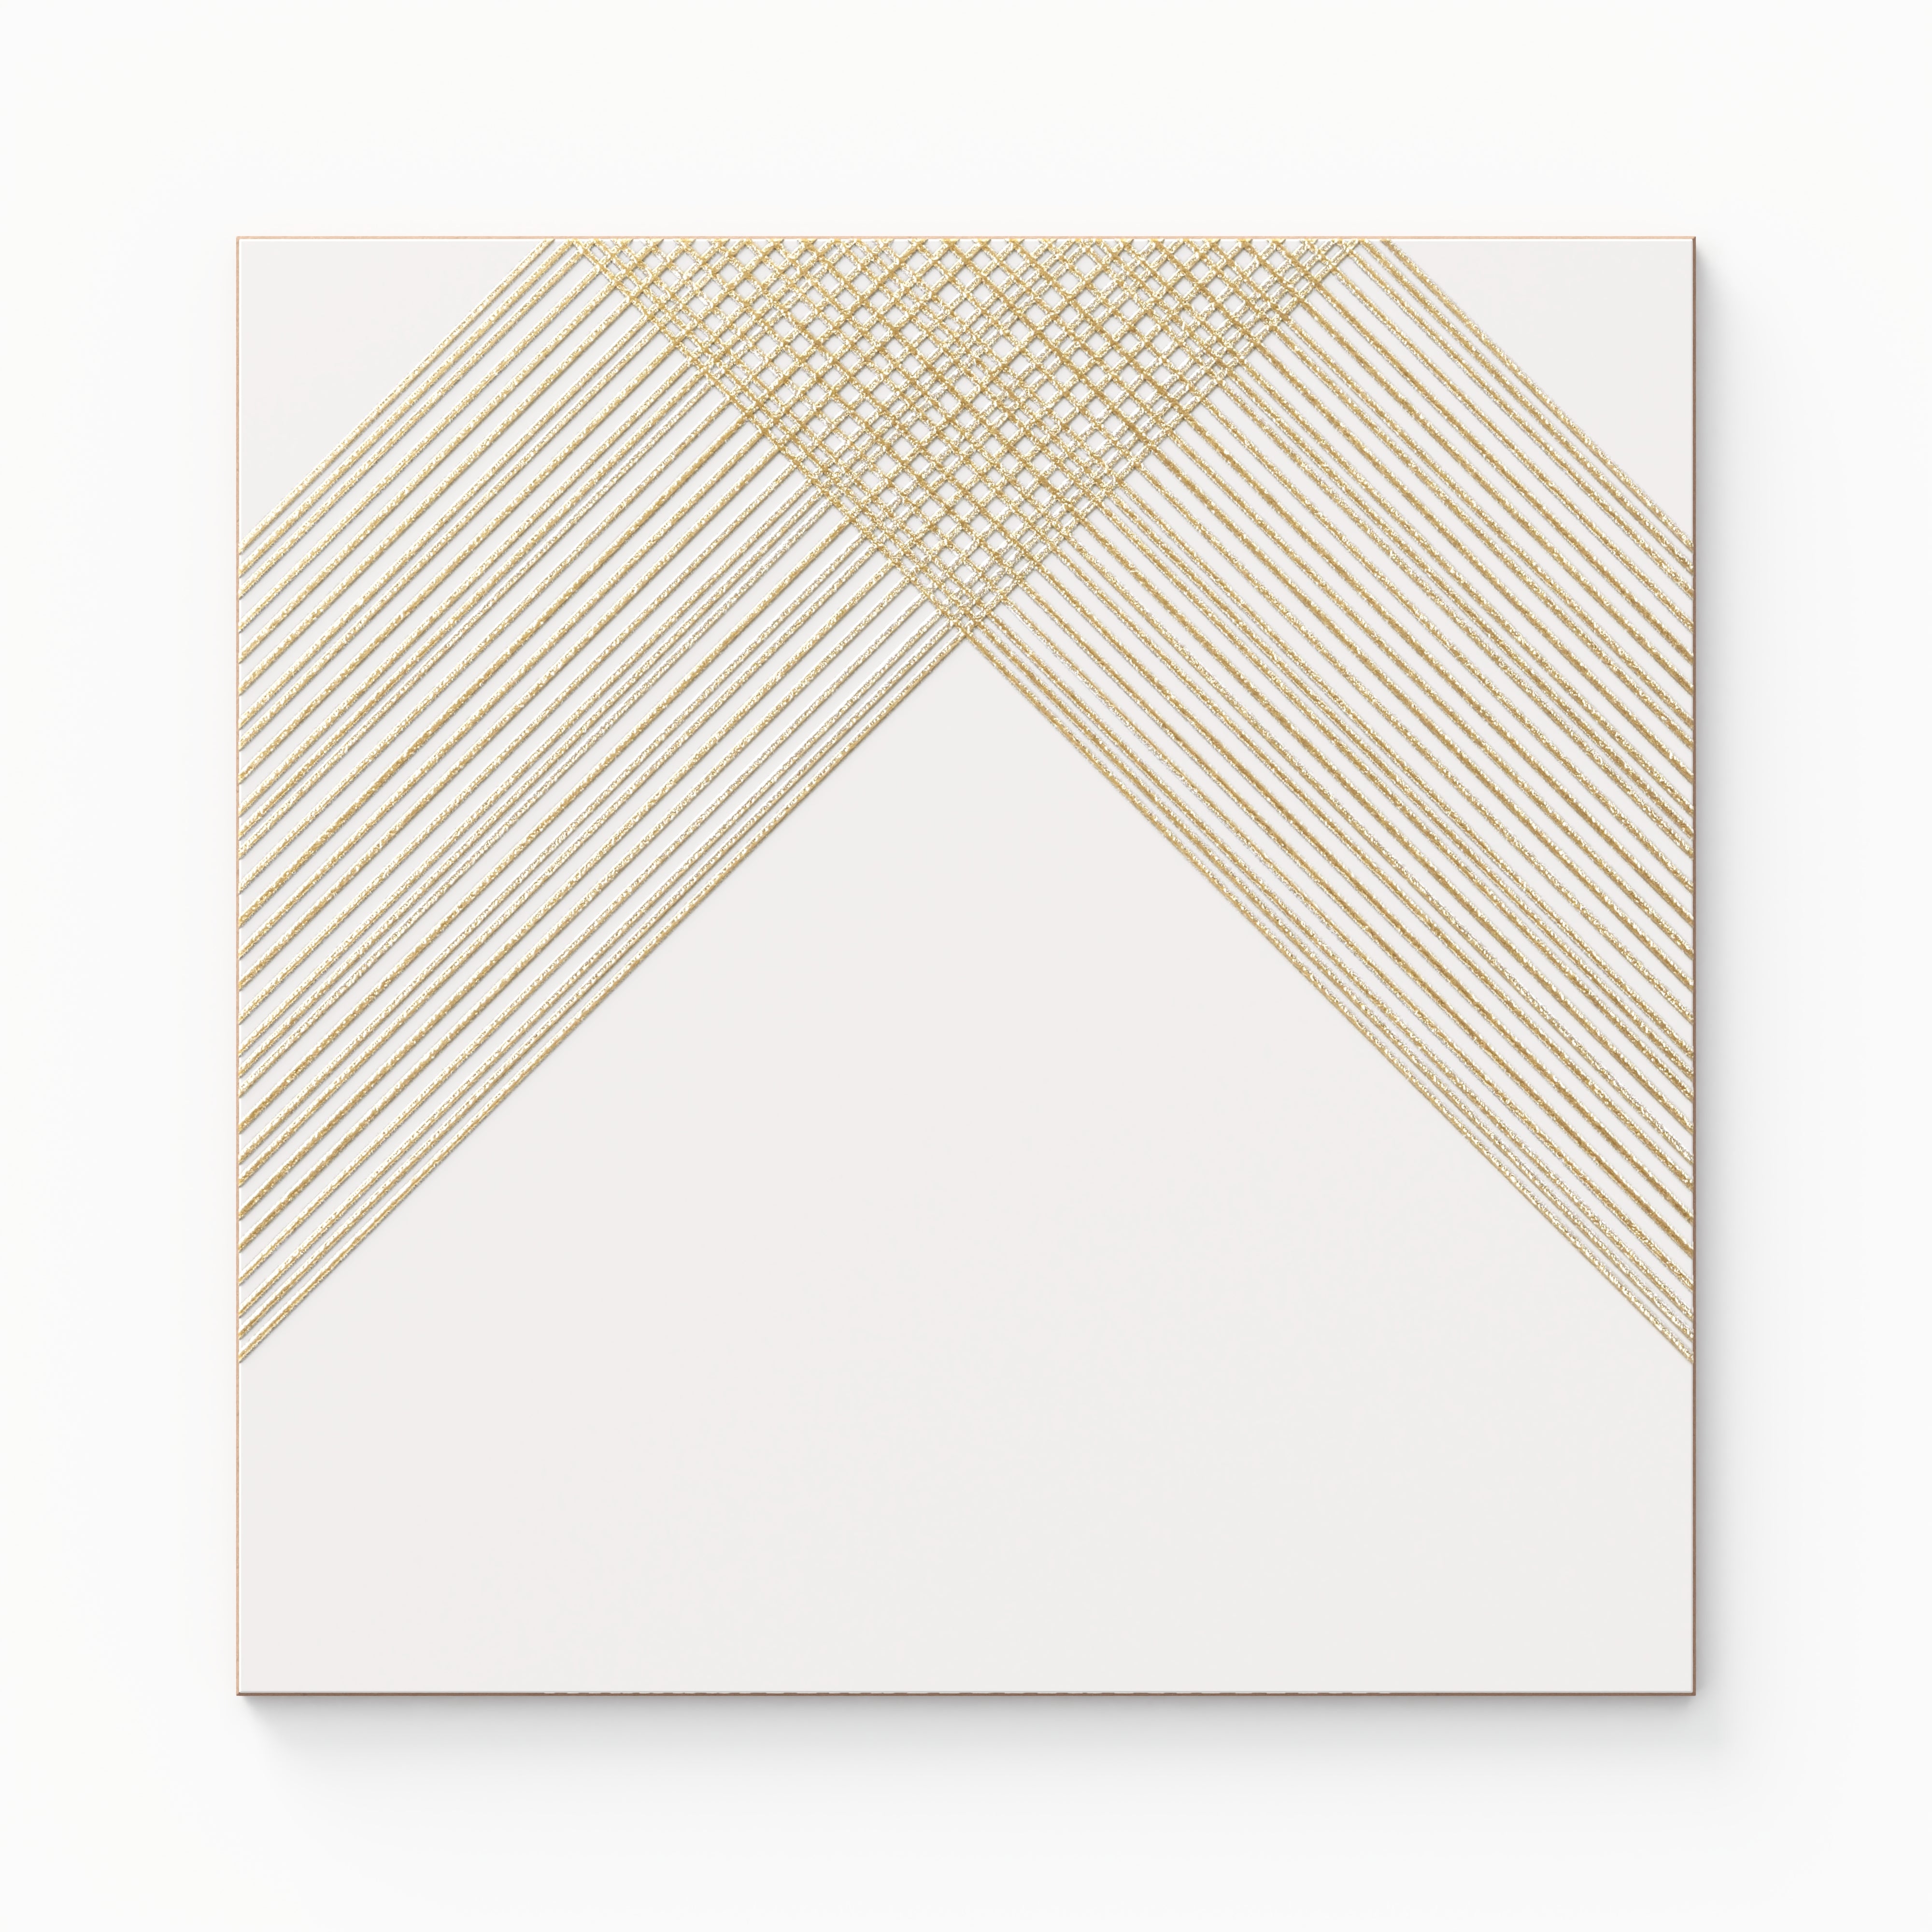 Estelle 12x12 Satin Ceramic Tile in Deco 2 White Gold Sample